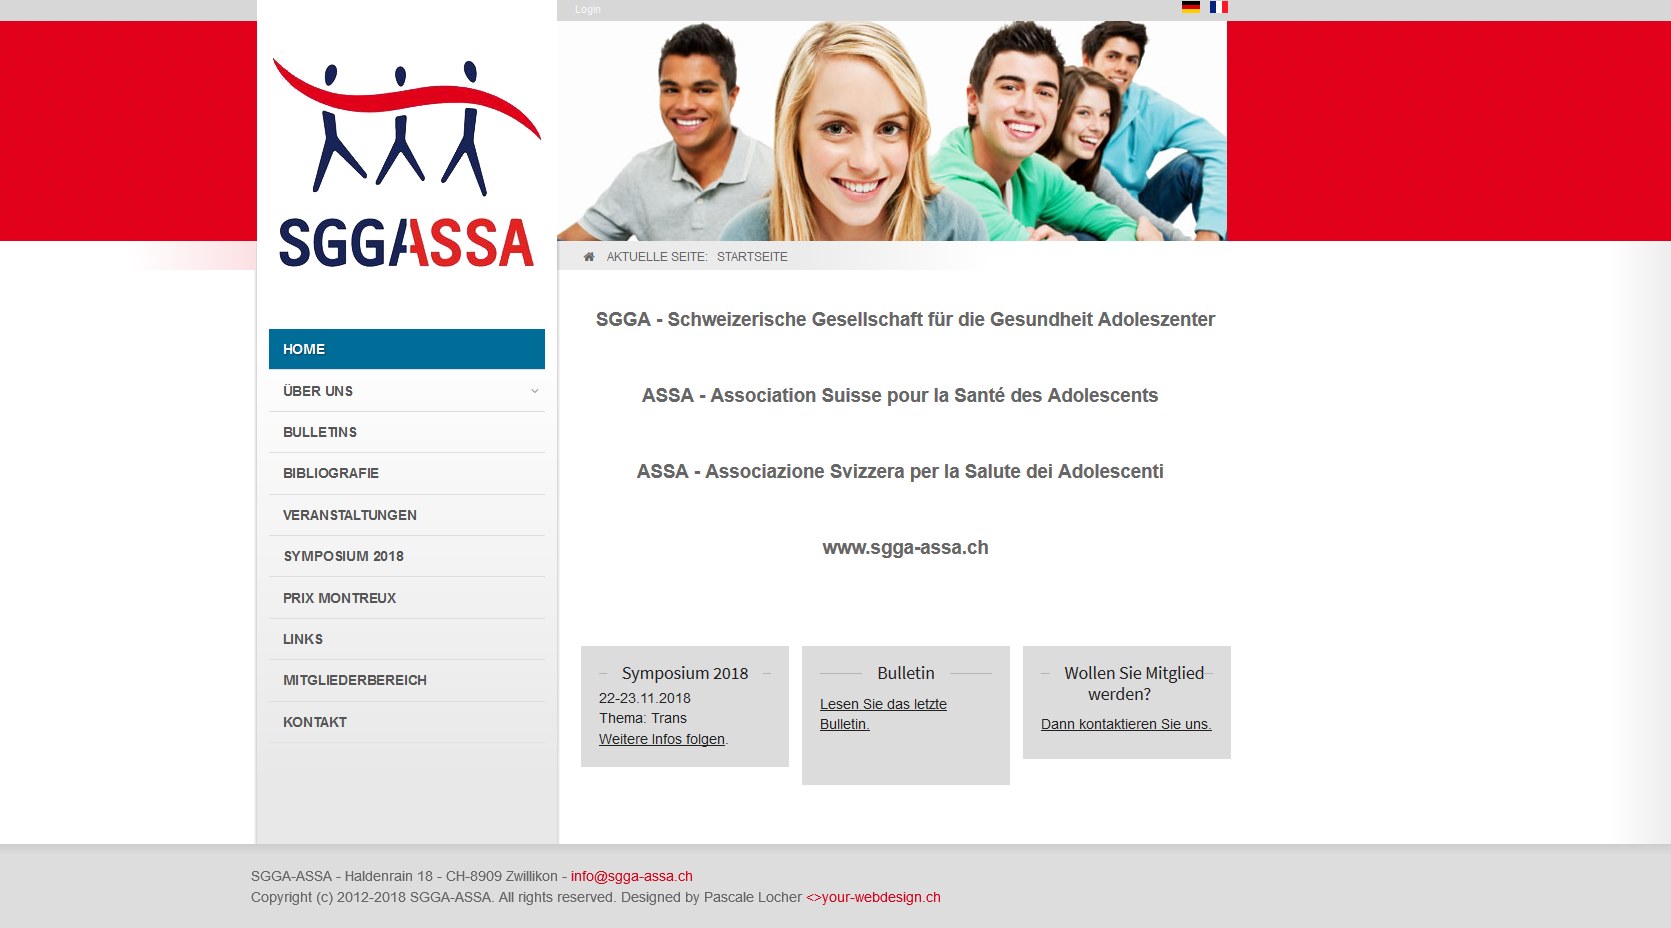 SGGA-ASSA - Schweizerische Gesellschaft für die Gesundheit Adoleszenter